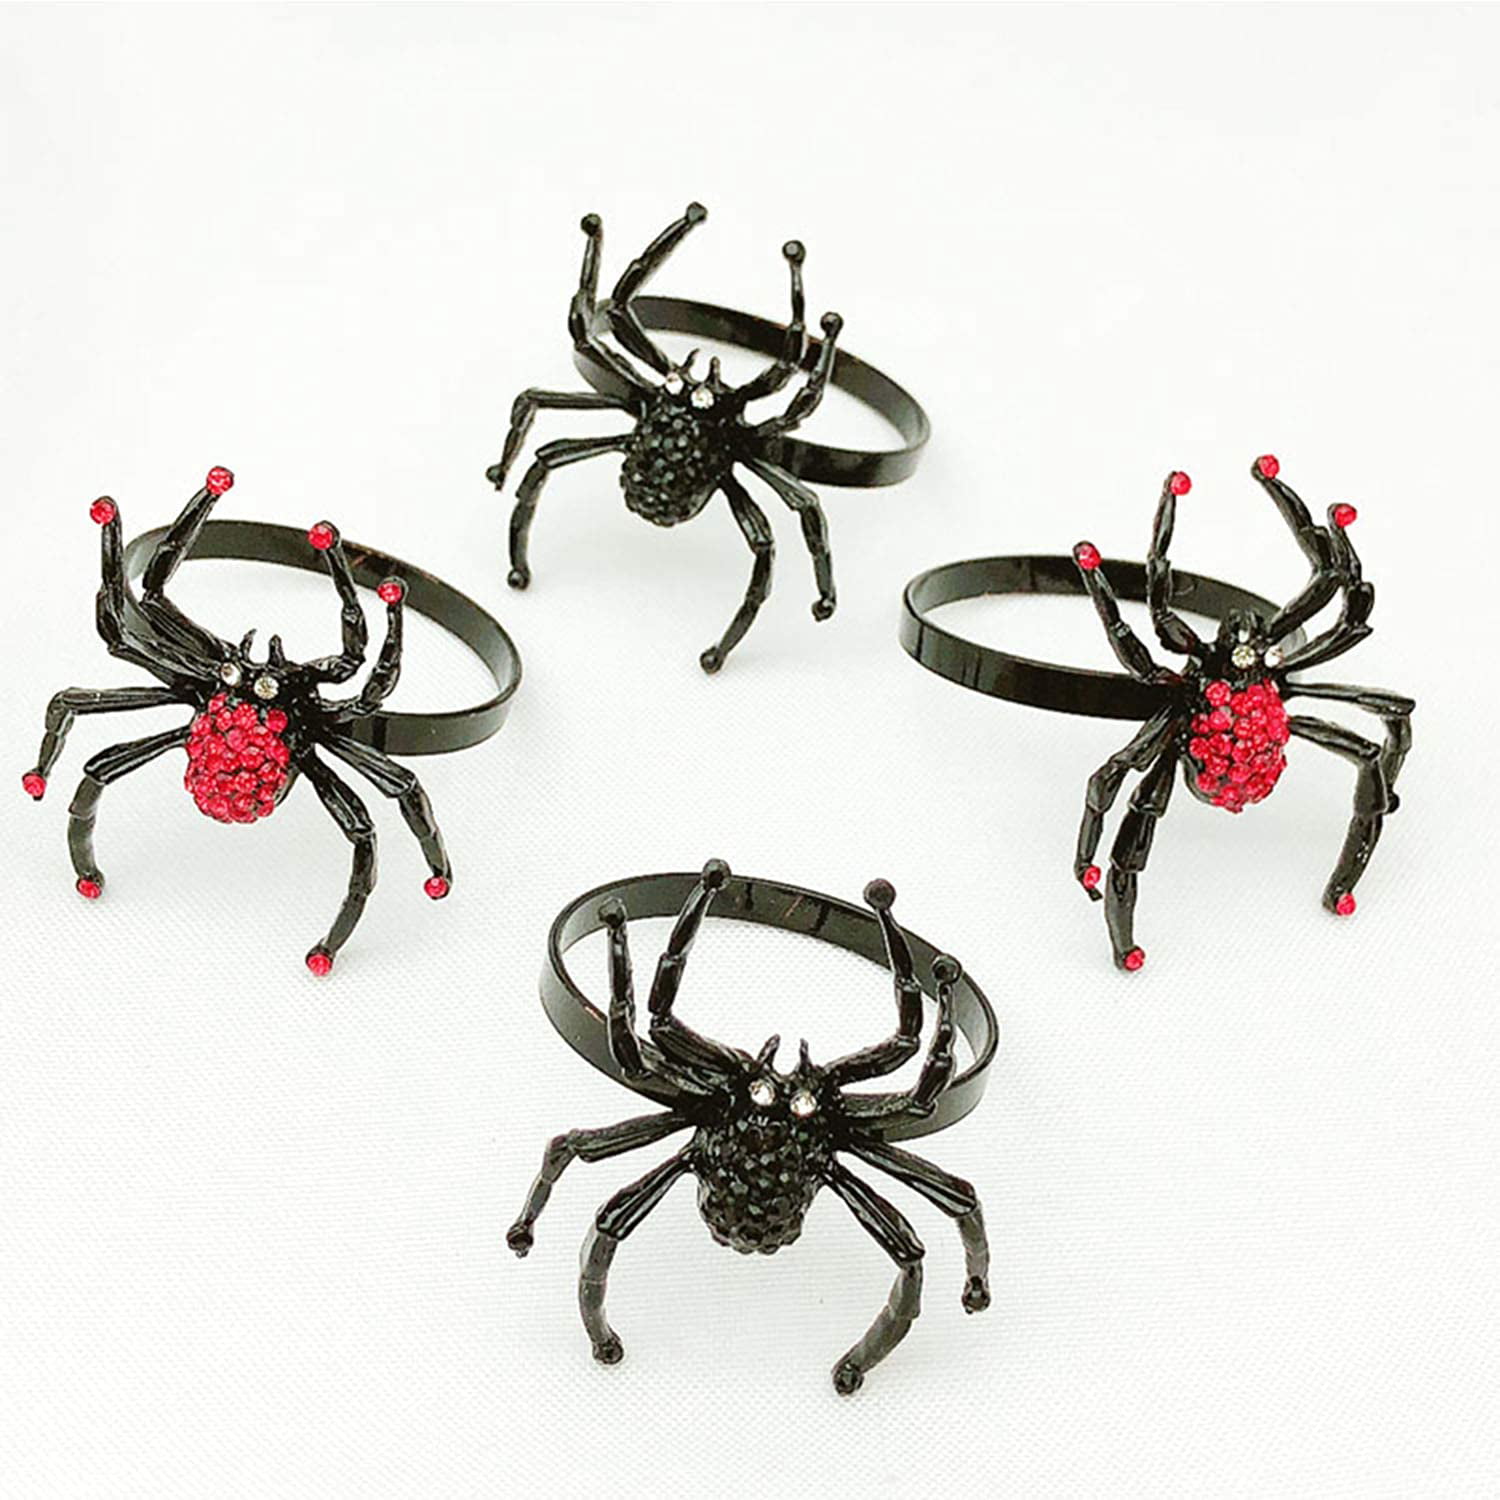 Halloween Napkin Rings Set of 4 Black Spider Halloween Decorations Diamonds Spider Black Napkin Ring Holder for Table Setting